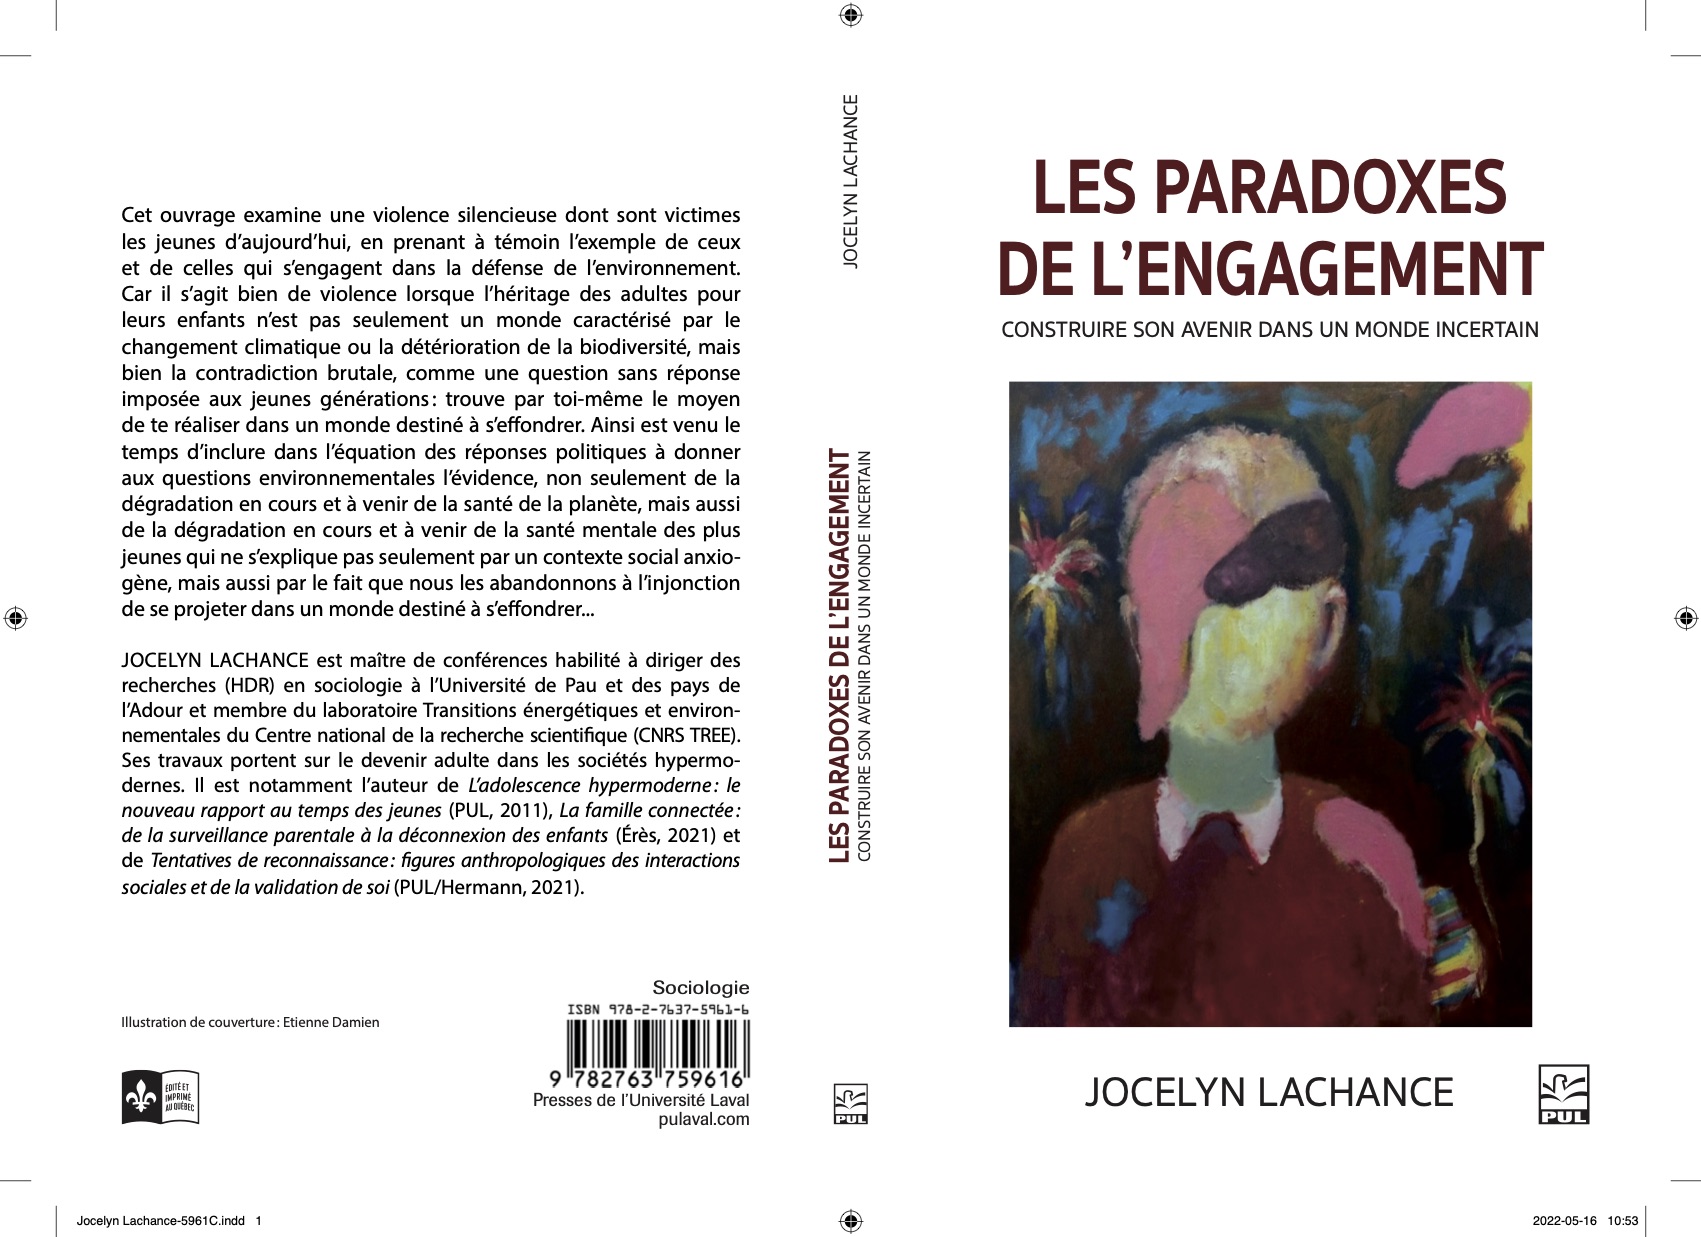 Lachance, J. (2022), Les paradoxes de l'engagement. Construire son avenir dans un monde incertain. Québec/France Presses de l'Université Laval/Hermann